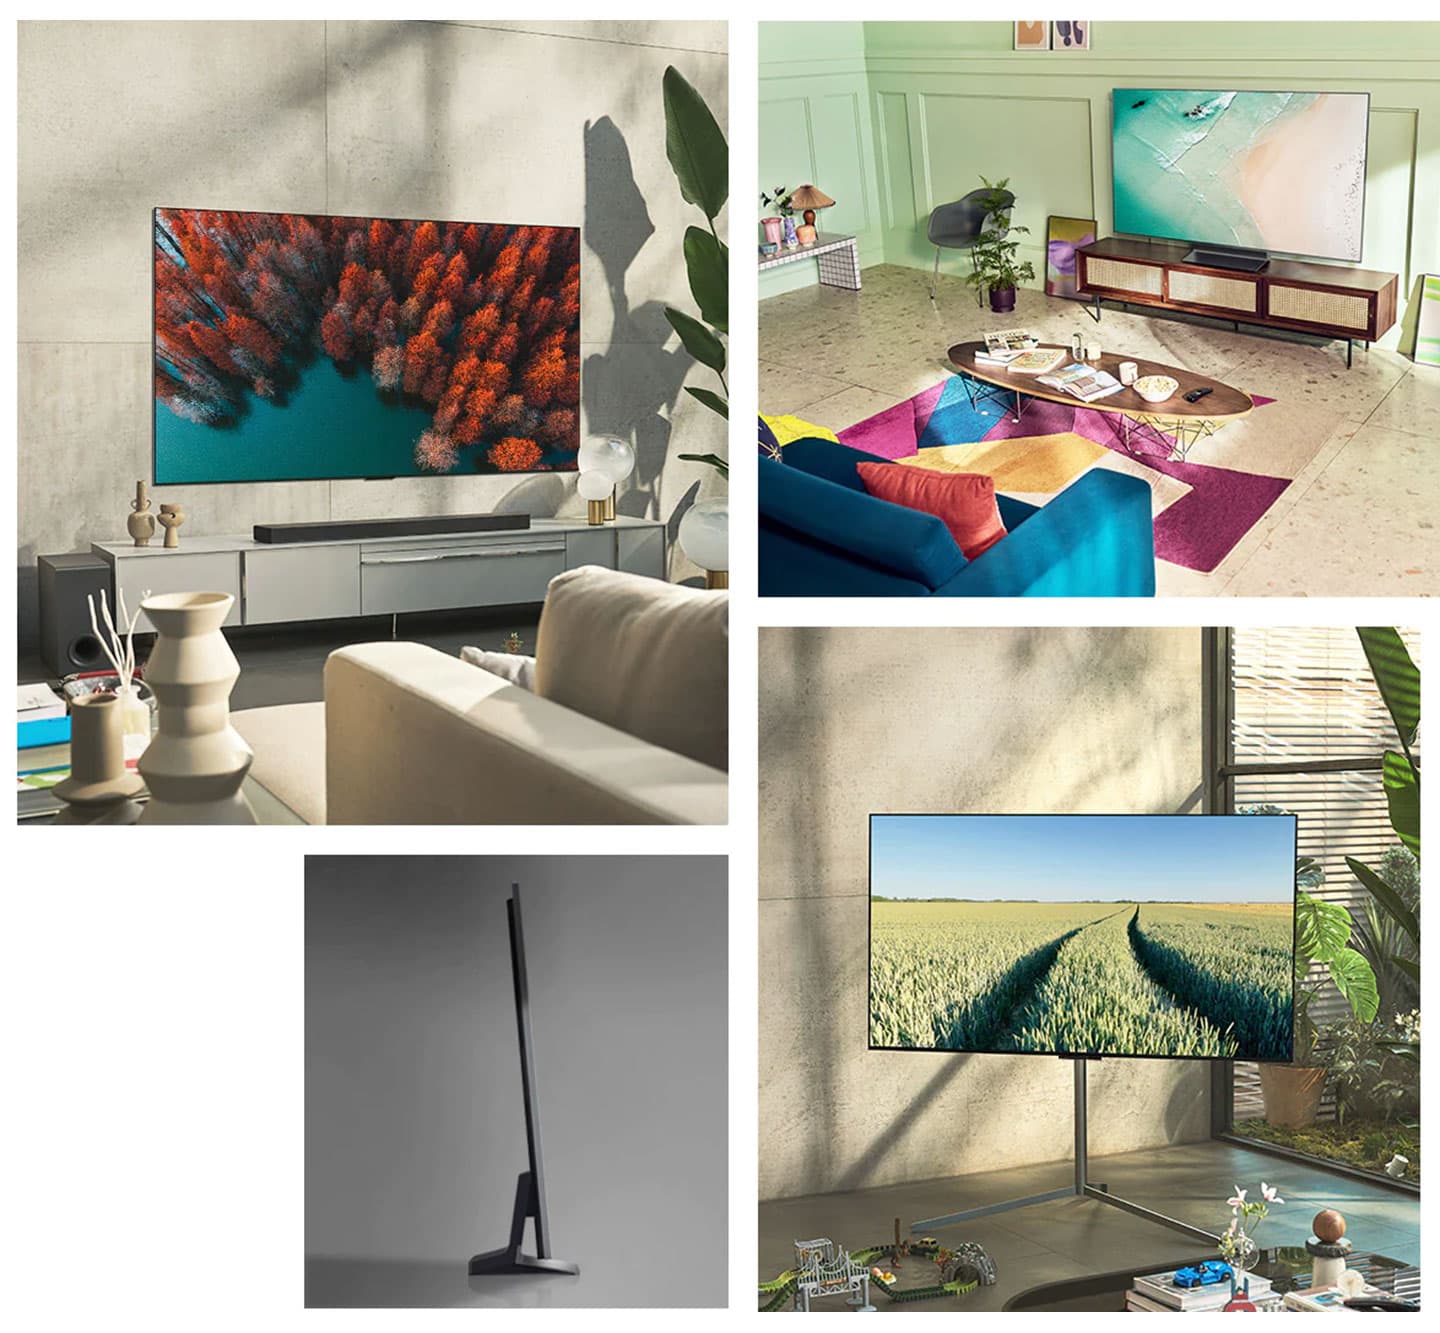 除了採壁掛形式安裝，LG OLED evo G2 零間隙藝廊系列也能裝上底座 (需選配) 置放於電視櫃上，或配站立式展示架 (需選配)，讓電視以氛圍感更濃的藝術品形式來擺。